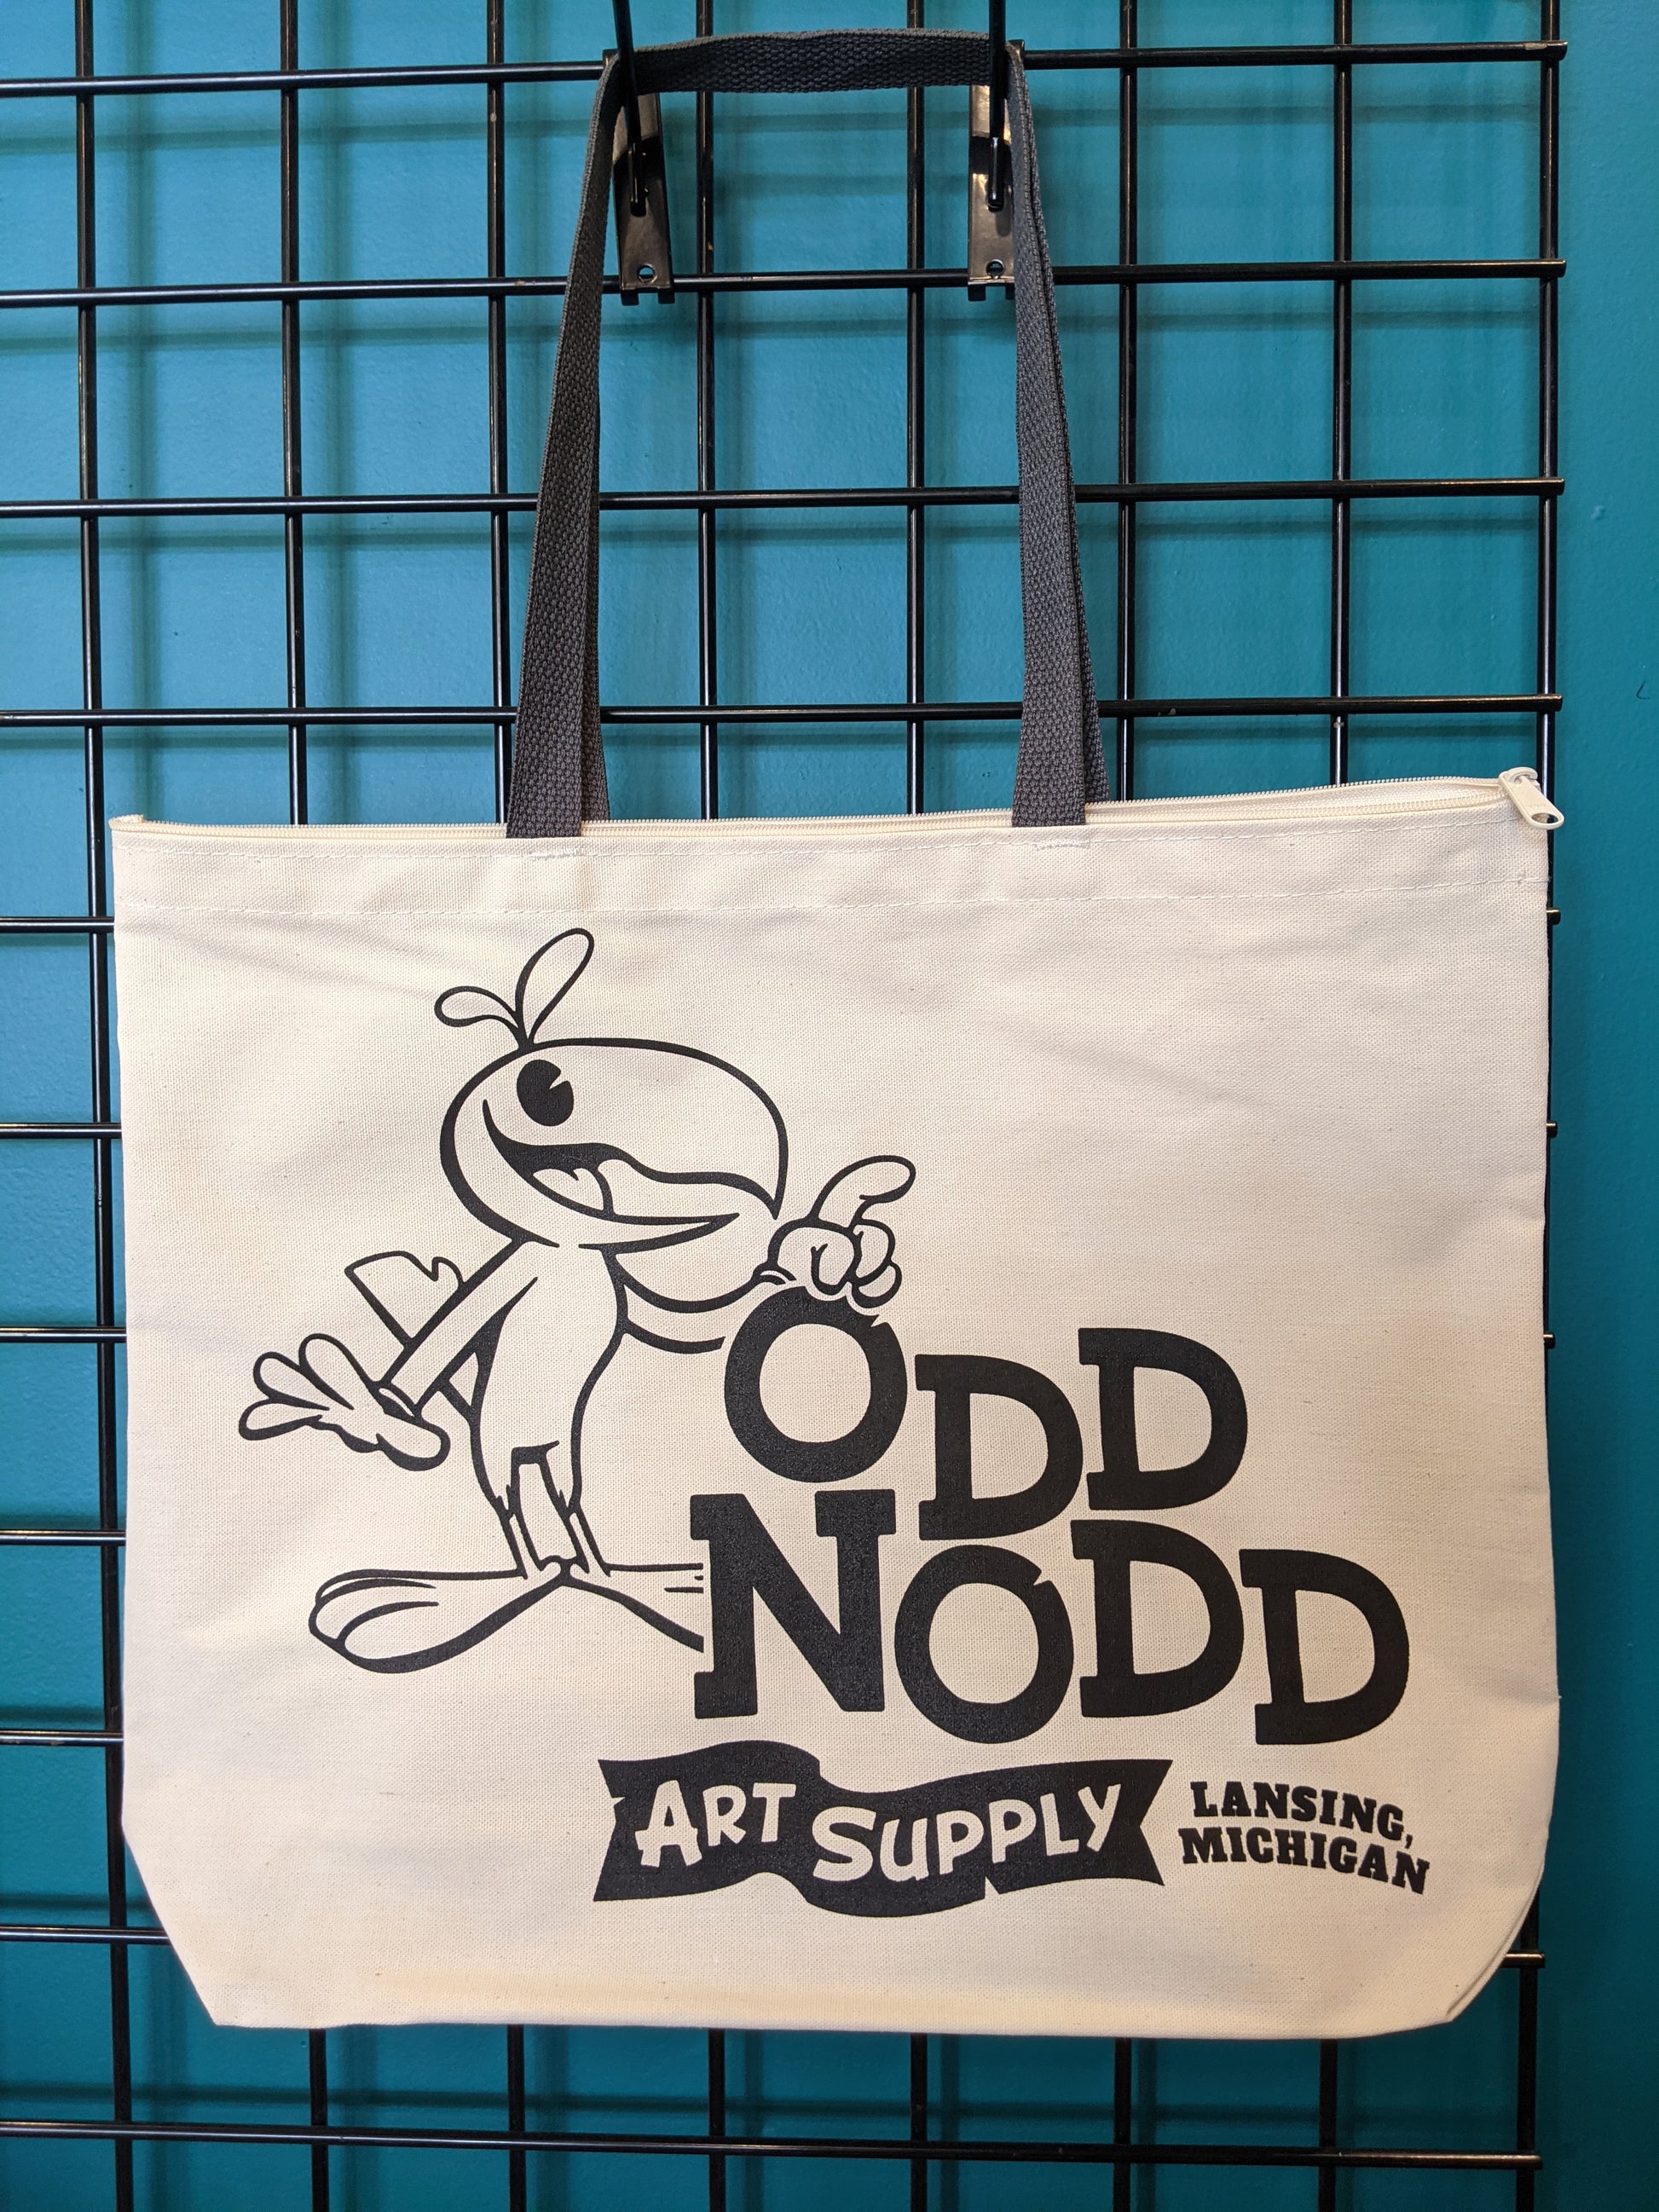 Odd Nodd Custom Tote Bags – Odd Nodd Art Supply